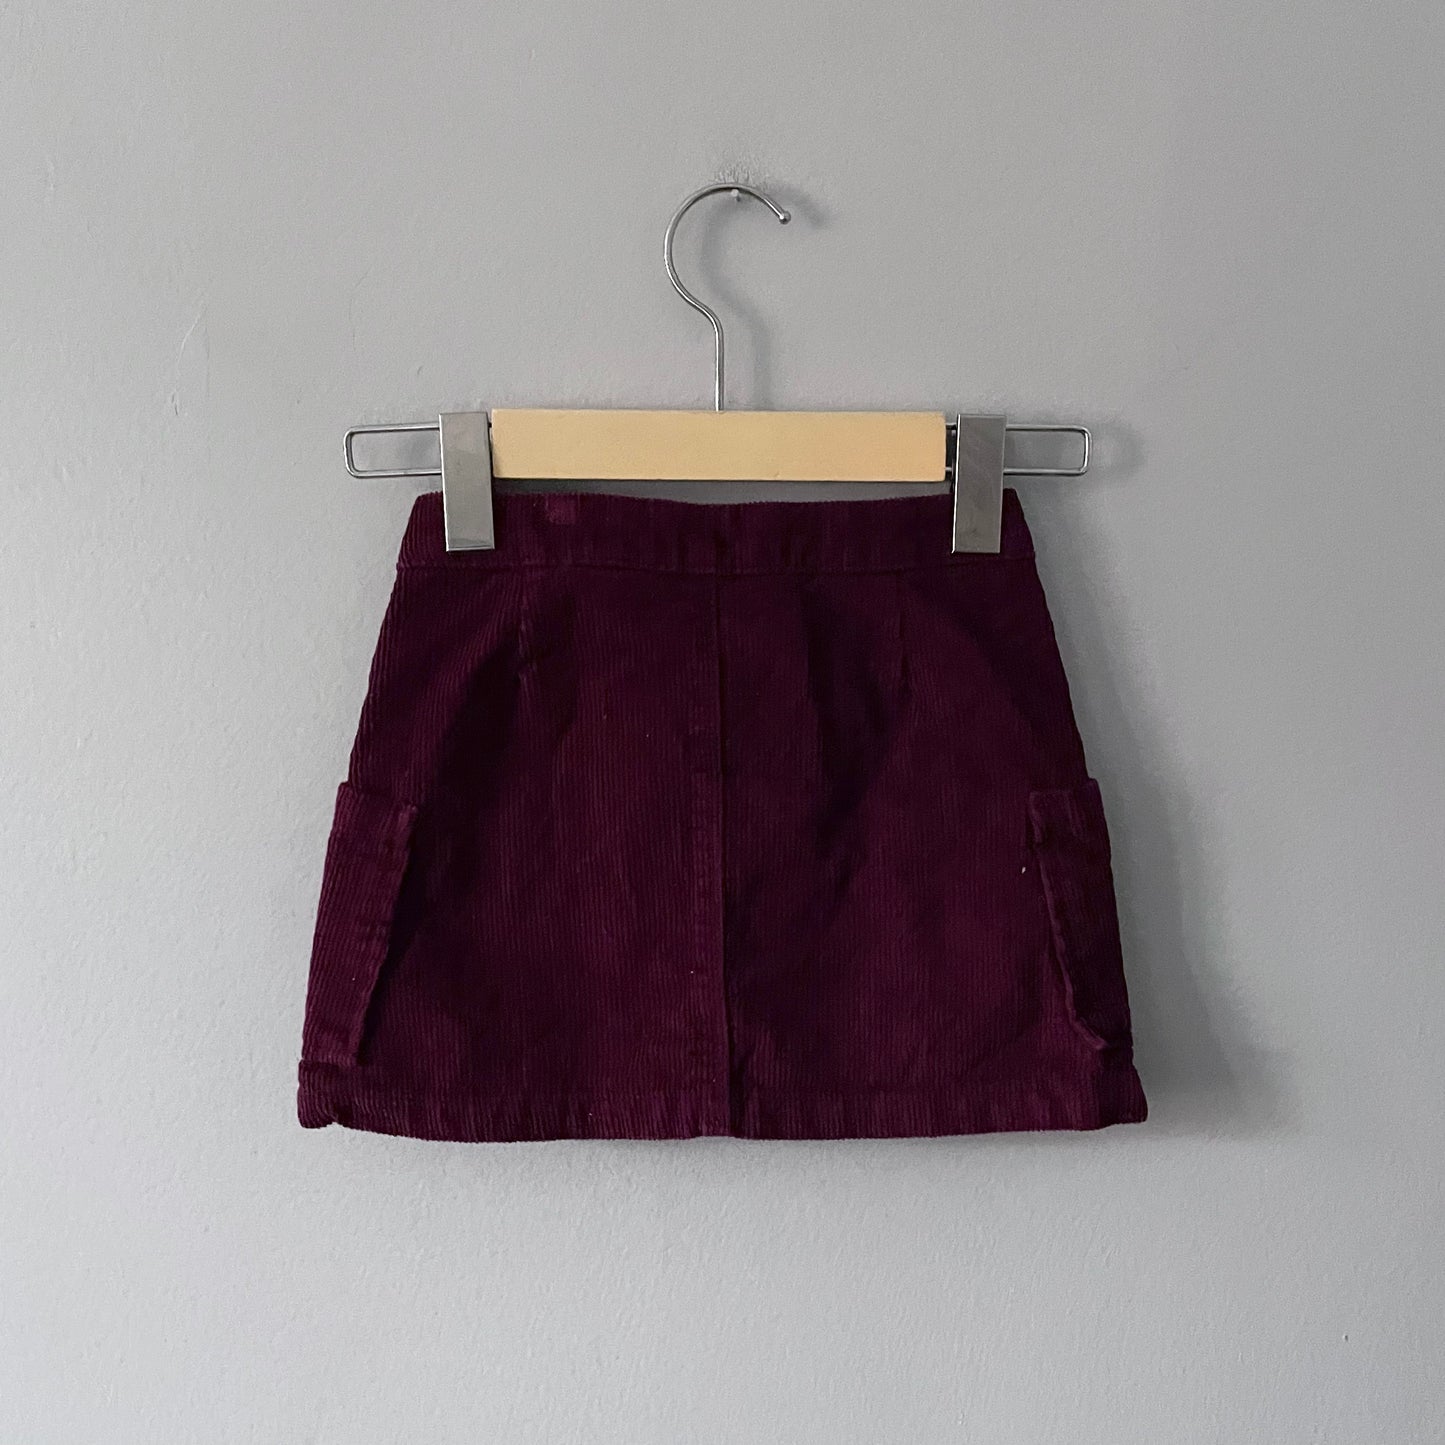 Zara / Burgundy corduroy skirt / 5Y